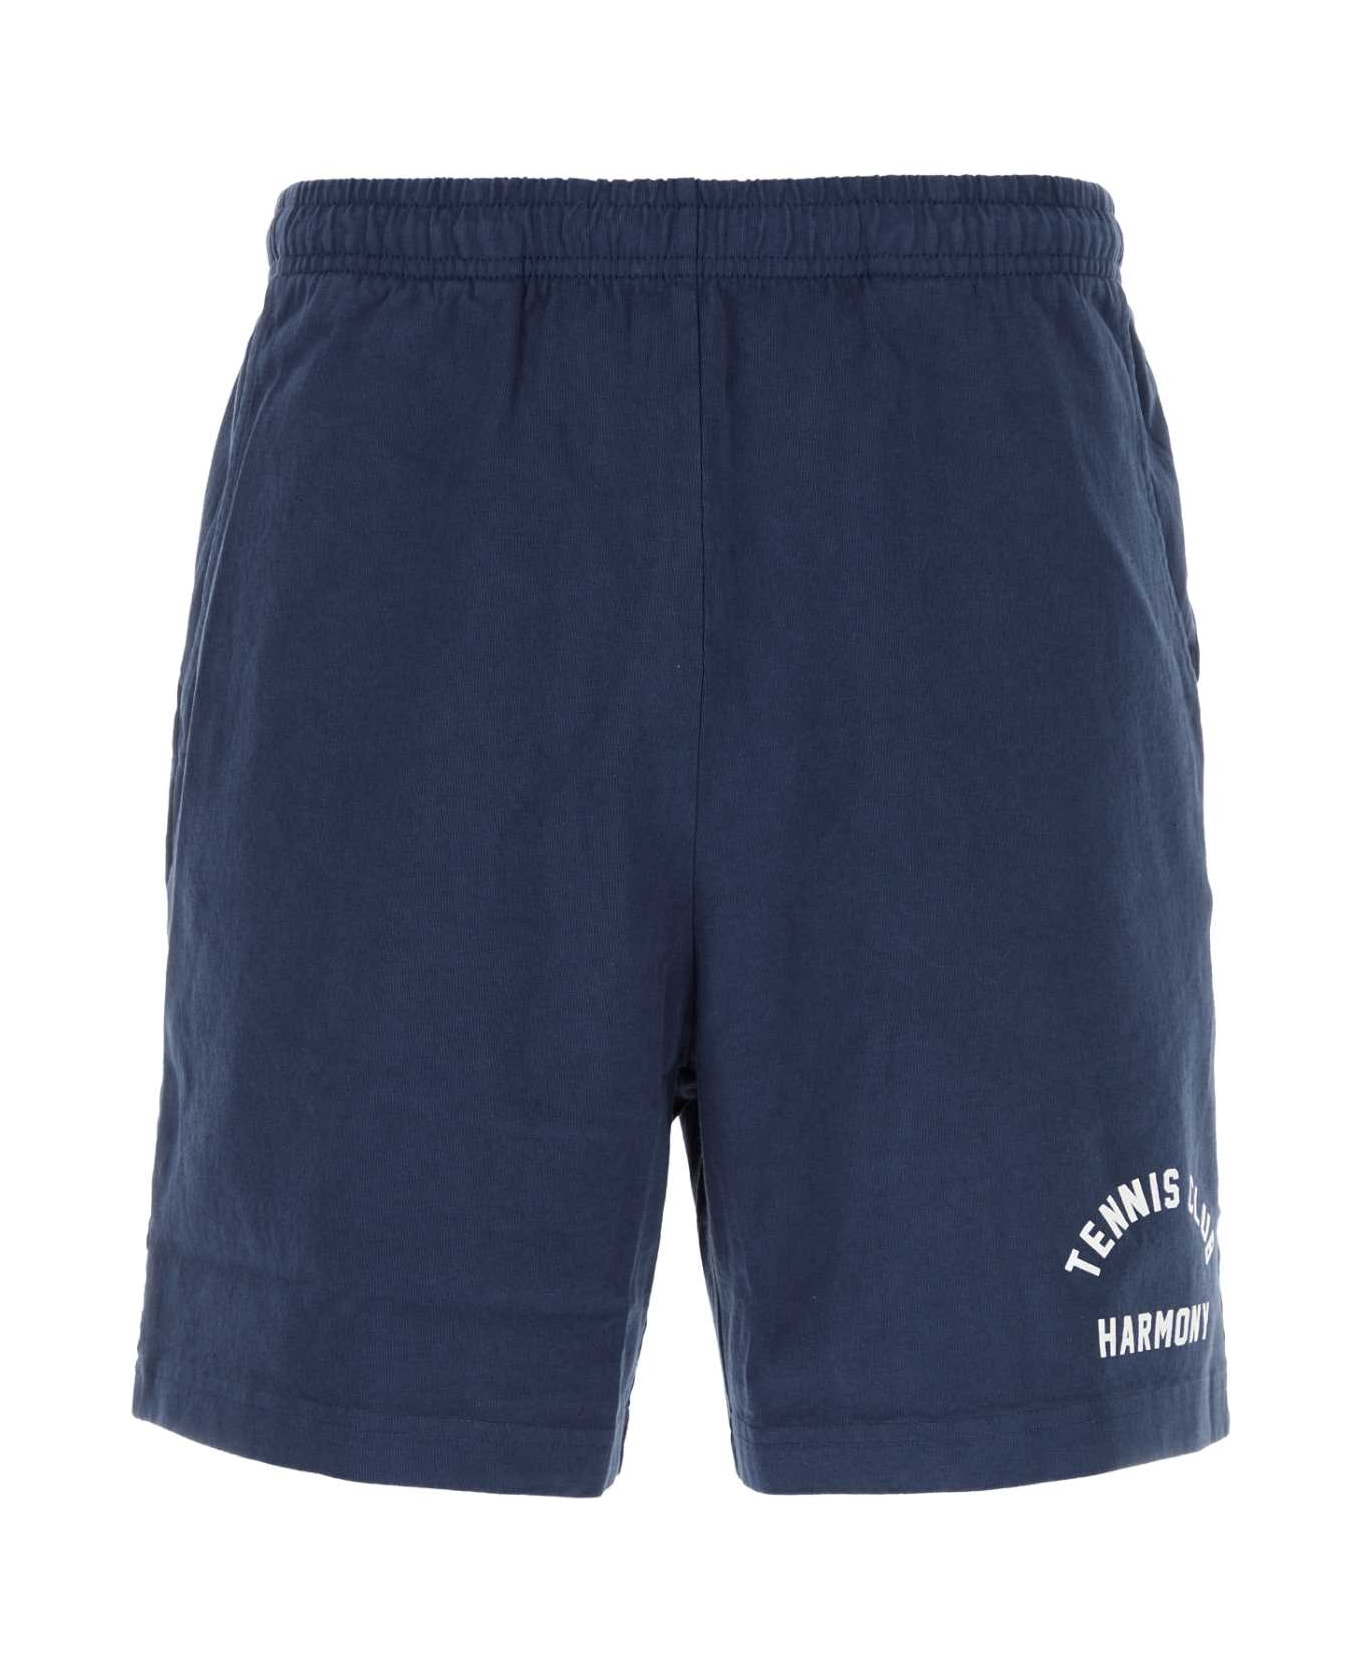 The Harmony Navy Blue Cotton Bermuda Shorts - 010